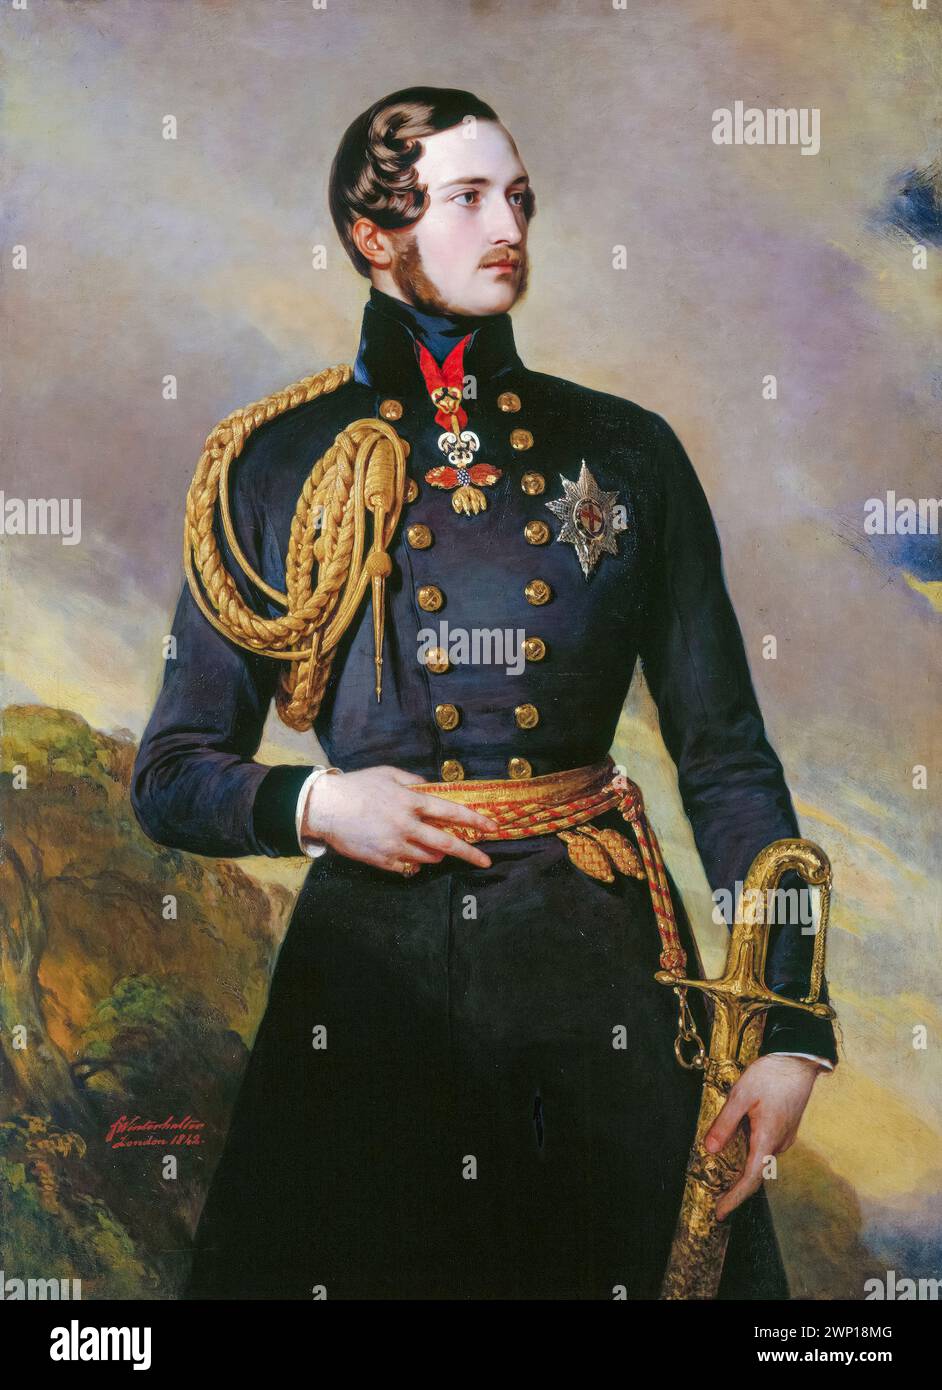 Principe Alberto di Sassonia-Coburgo e Gotha (1819-1861) consorte del monarca britannico 1840-1861, ritratto a olio su tela di Frans Xaver Winterhalter, 1842 Foto Stock